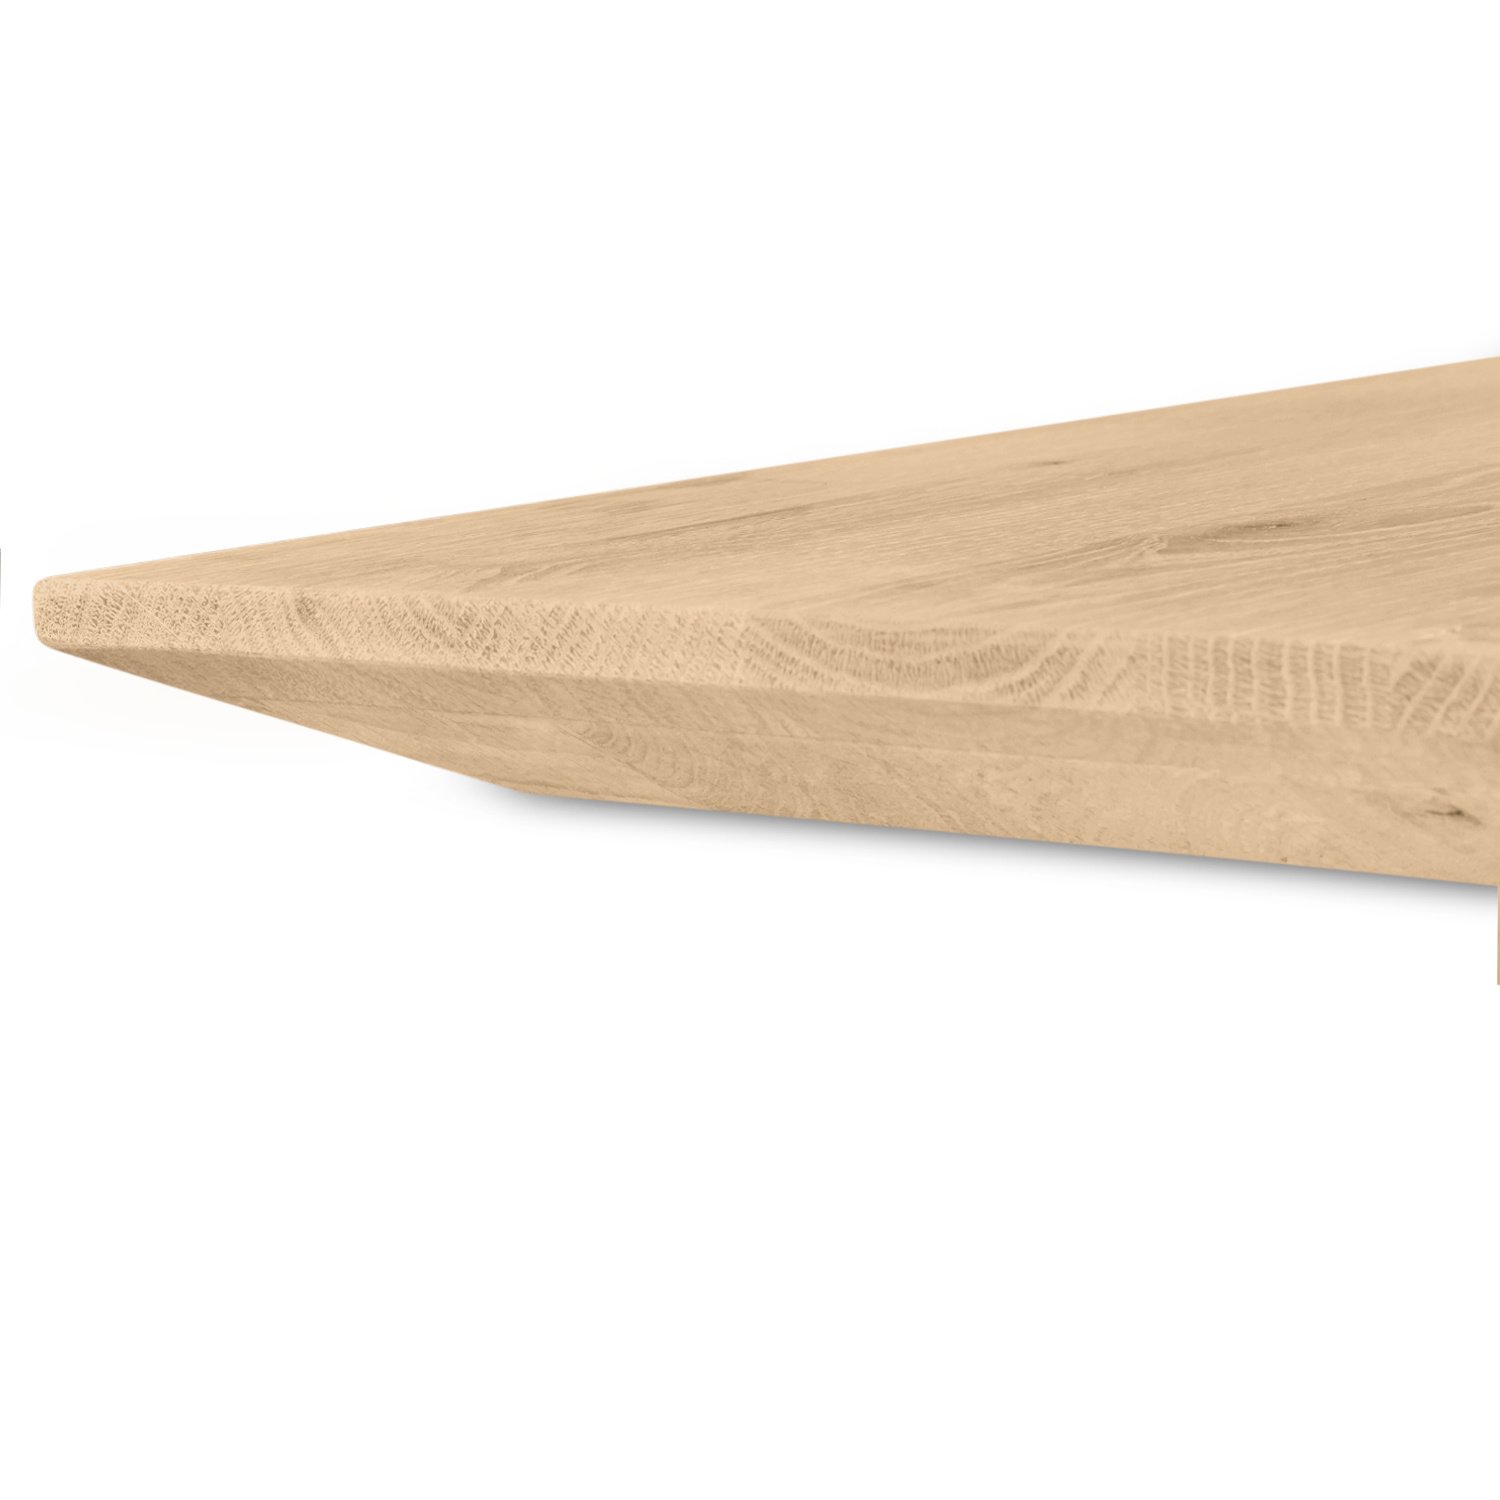  Eiken  tafelblad verjongd - op maat - 4 cm dik (2-laags) - met verjongde rand - foutvrij Europees eikenhout - verlijmd kd 8-12% - 50-120x50-350 cm